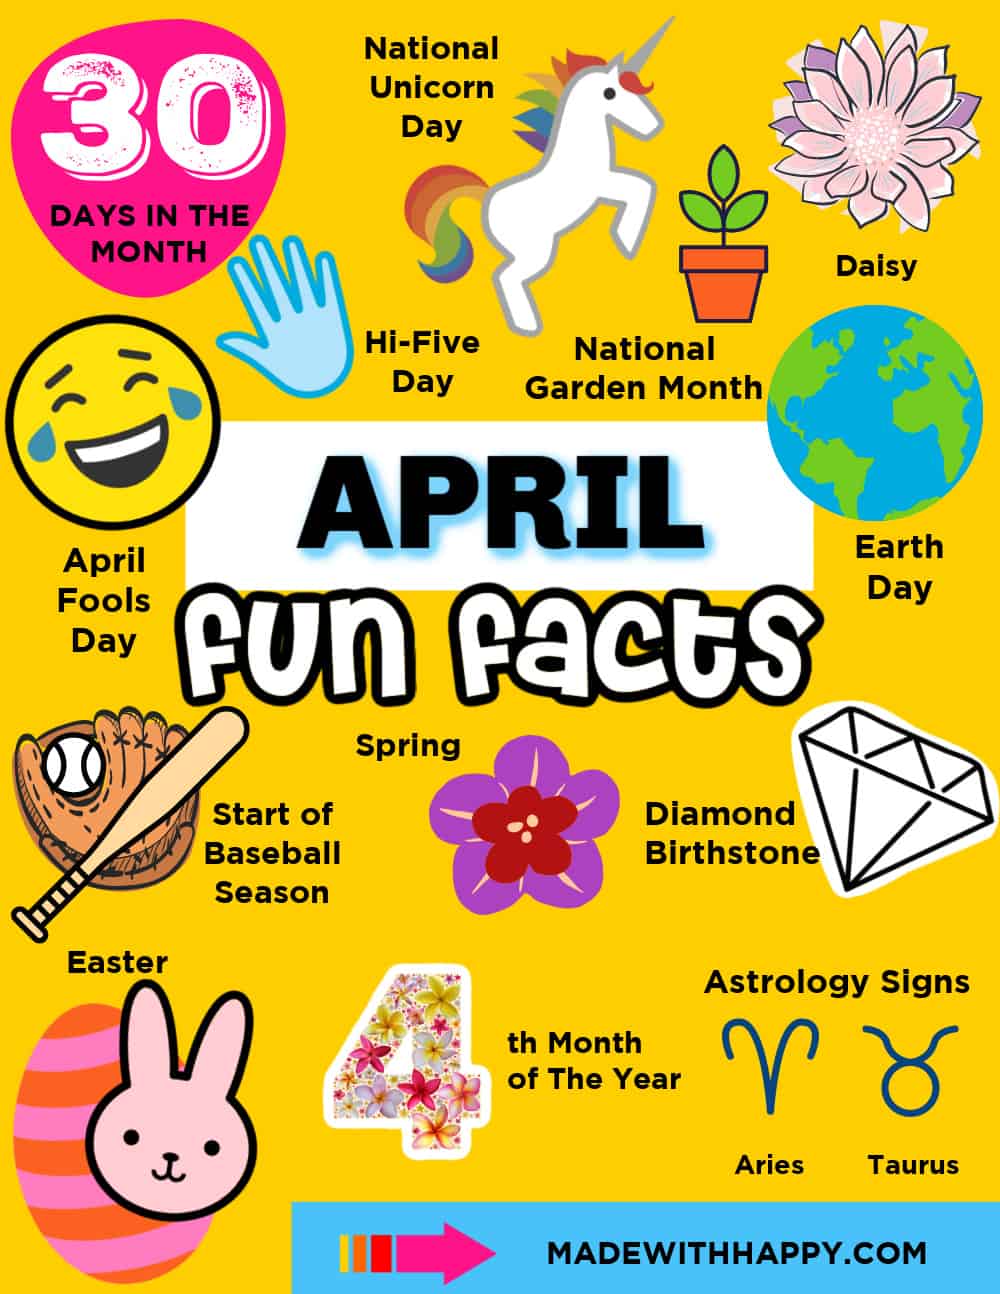 April Fun Facts